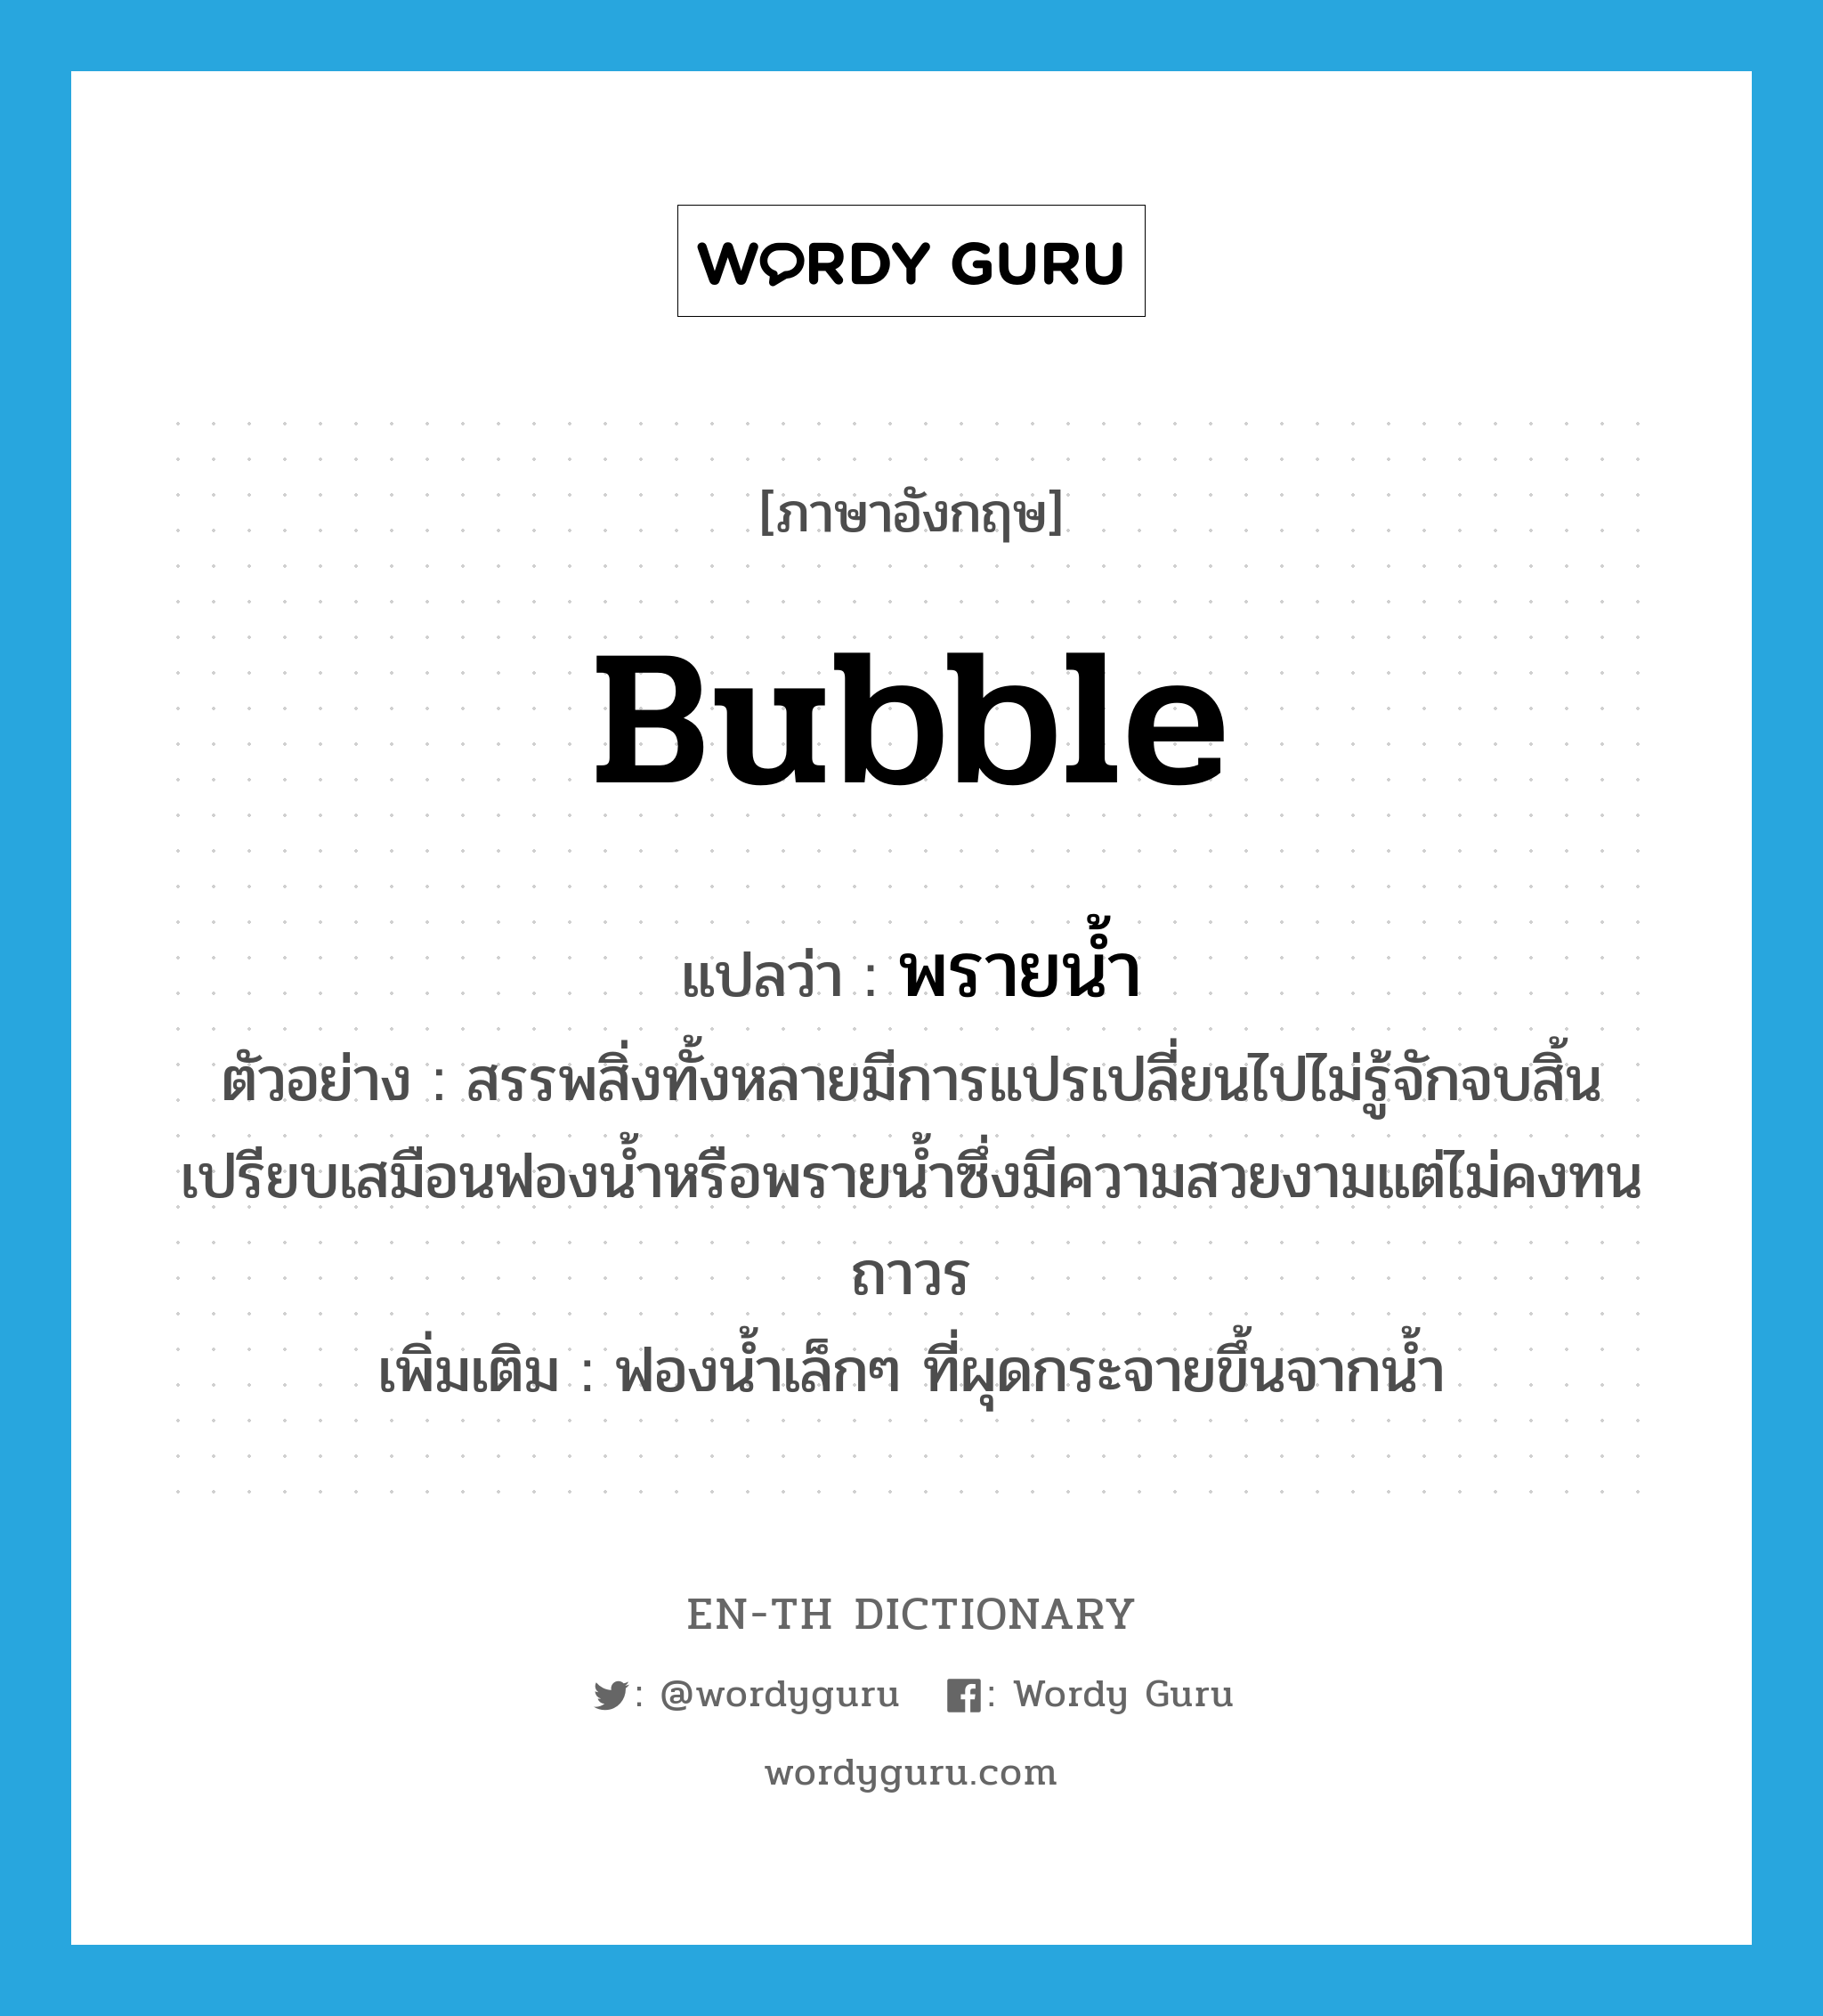 bubble แปลว่า?, คำศัพท์ภาษาอังกฤษ bubble แปลว่า พรายน้ำ ประเภท N ตัวอย่าง สรรพสิ่งทั้งหลายมีการแปรเปลี่ยนไปไม่รู้จักจบสิ้นเปรียบเสมือนฟองน้ำหรือพรายน้ำซึ่งมีความสวยงามแต่ไม่คงทนถาวร เพิ่มเติม ฟองน้ำเล็กๆ ที่ผุดกระจายขึ้นจากน้ำ หมวด N